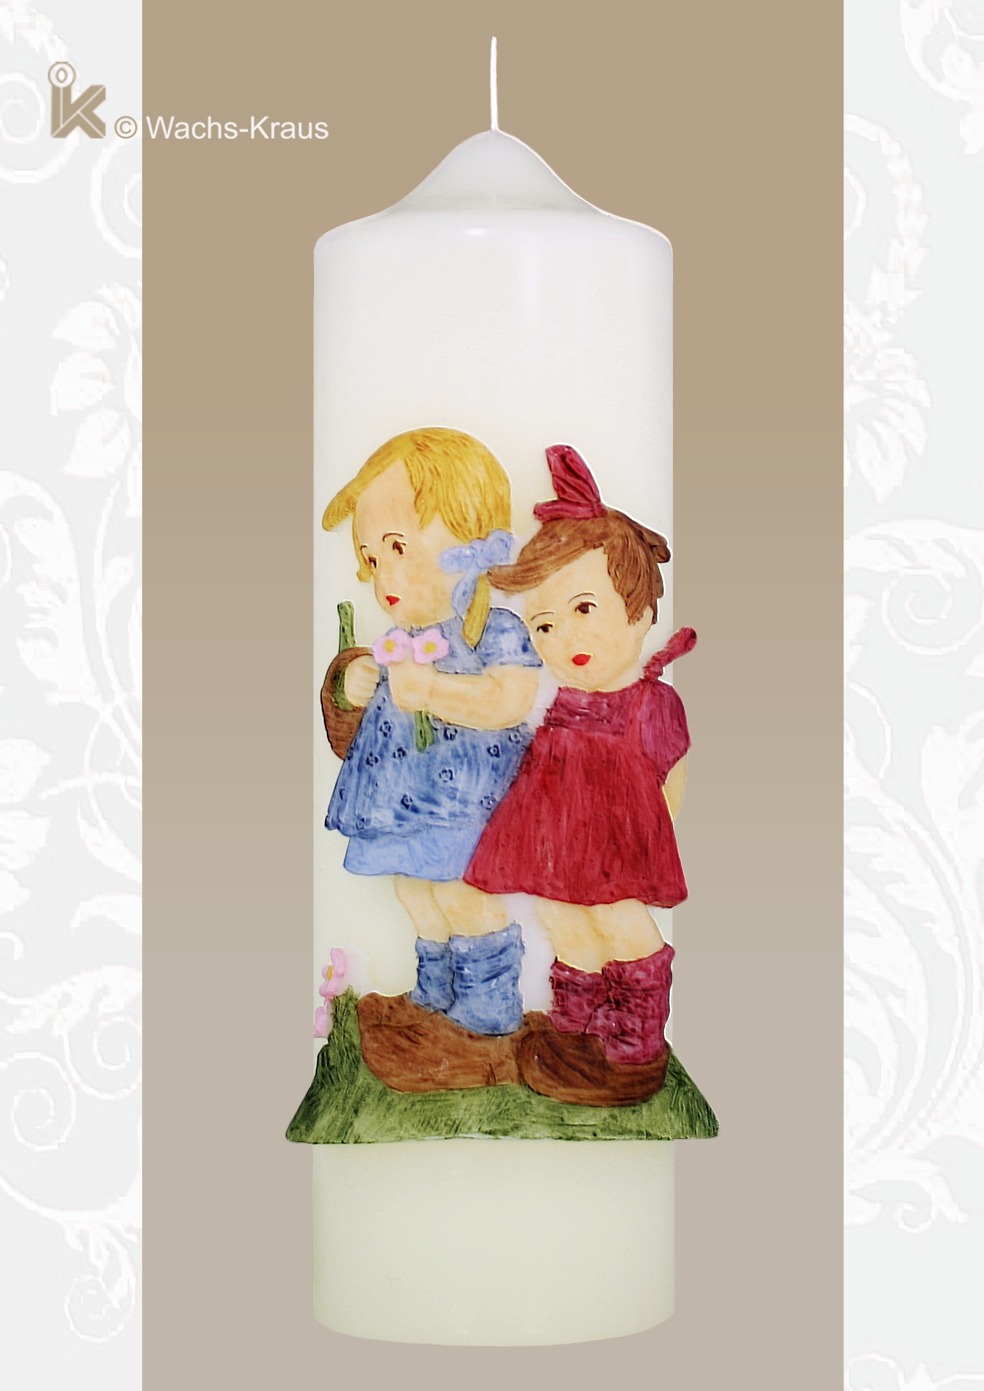 Eine Freude für Sammler und Liebhaber von Hummel-Figuren. Diese, im Hummel-Stil gestaltete Kerze, zwei Mädchen. Motiv aus Wachs gegossen.